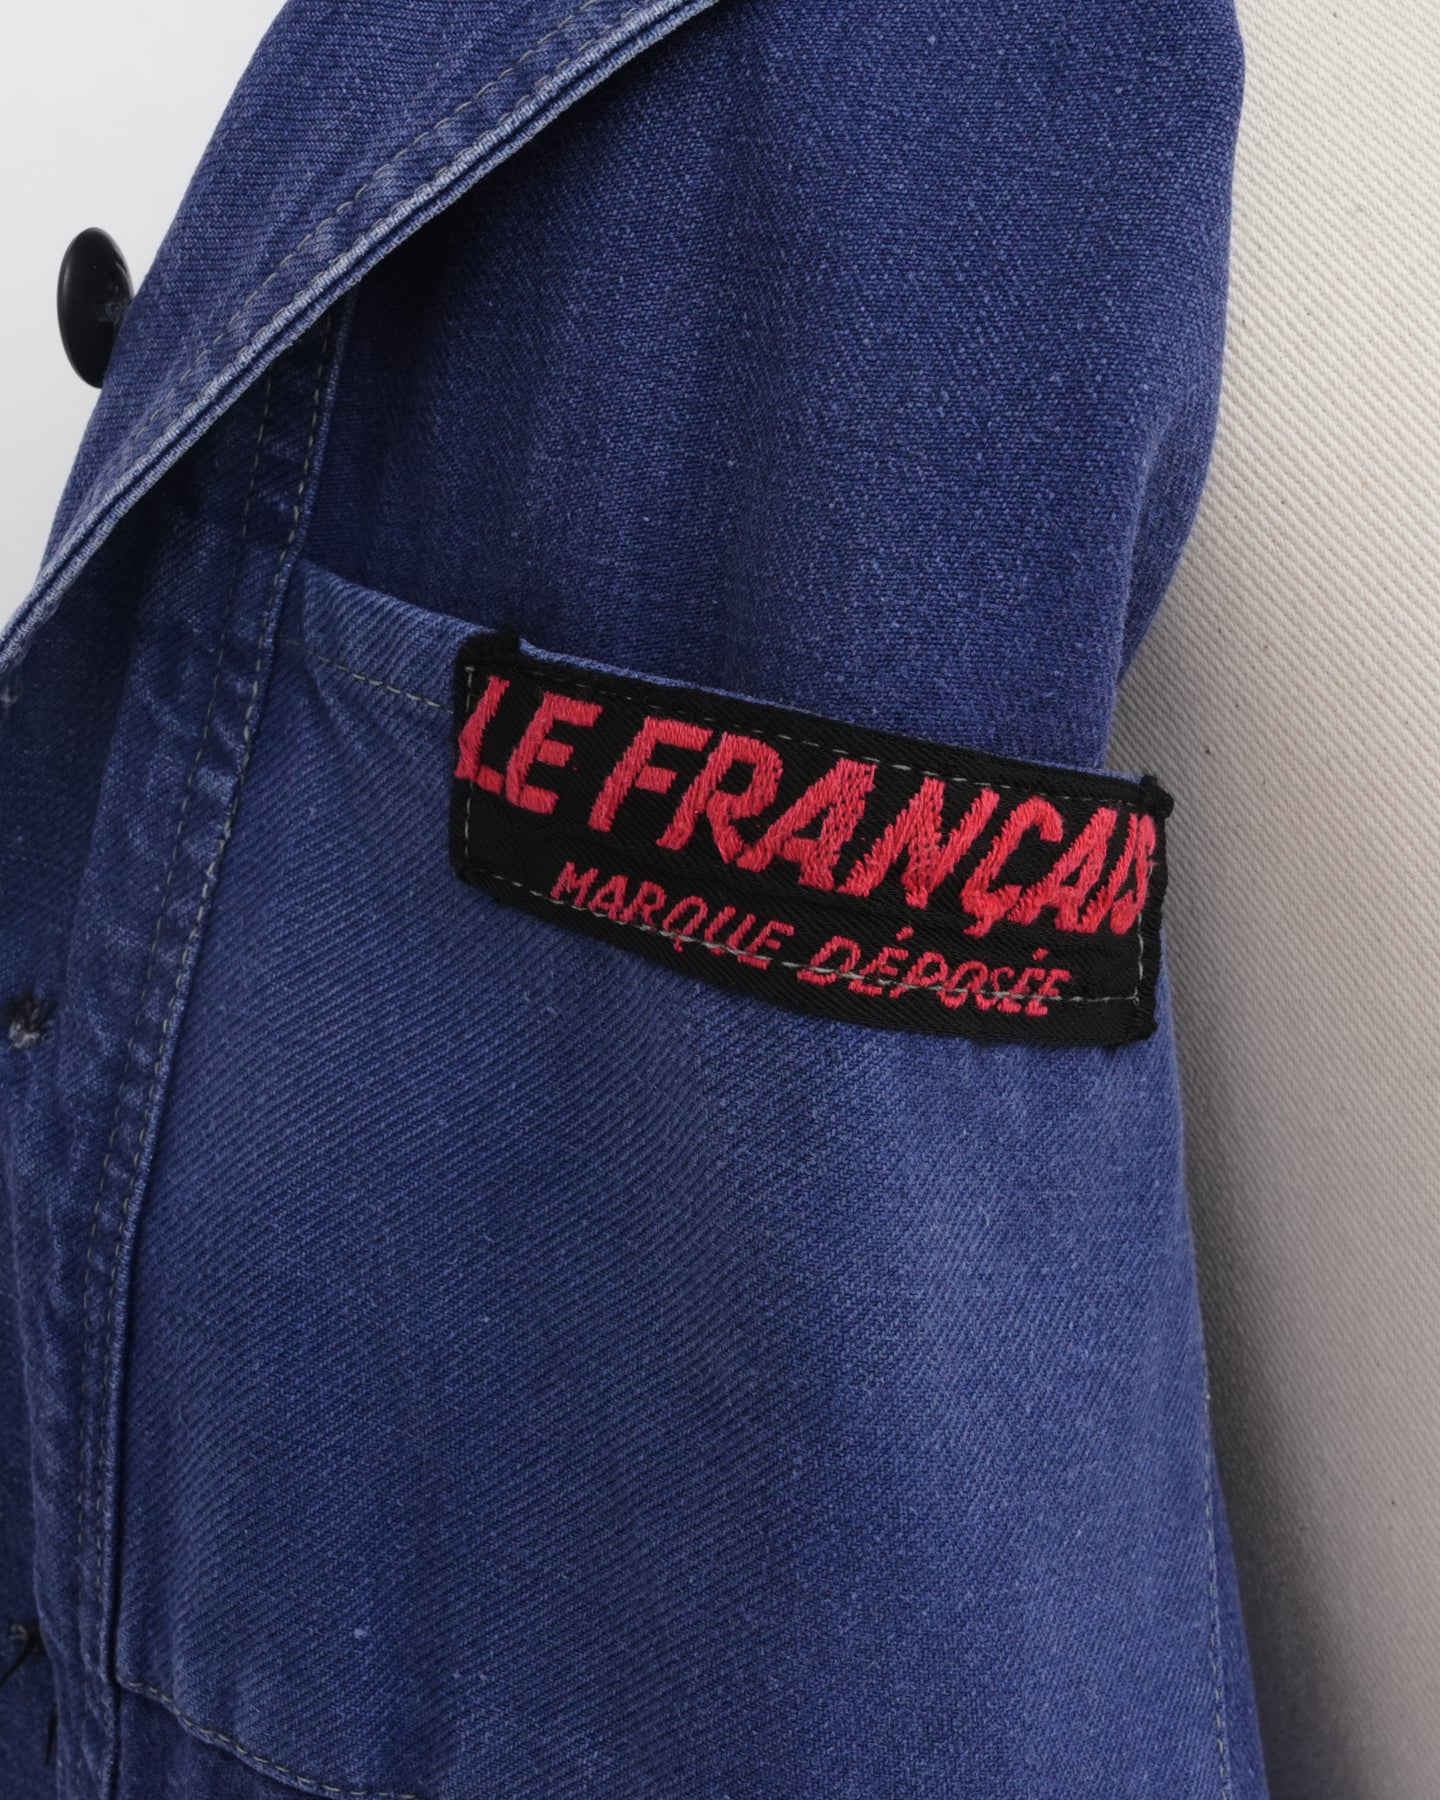 French Work Jacket